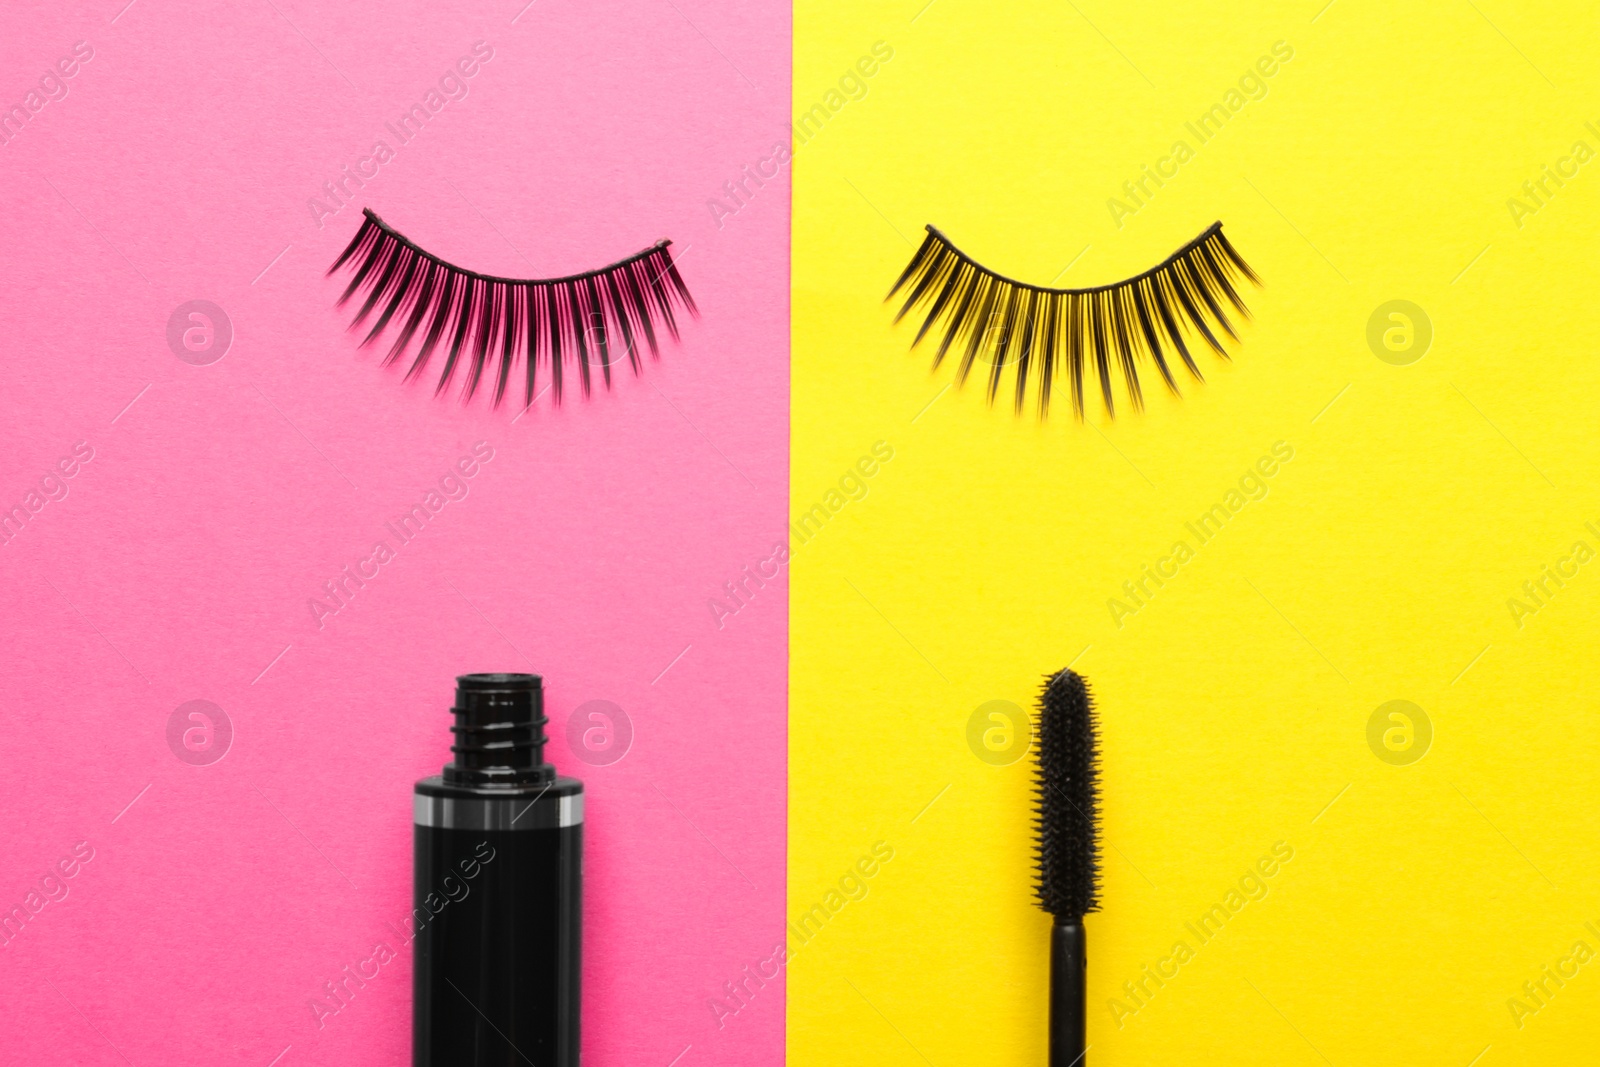 Photo of False eyelashes and mascara on color background, flat lay